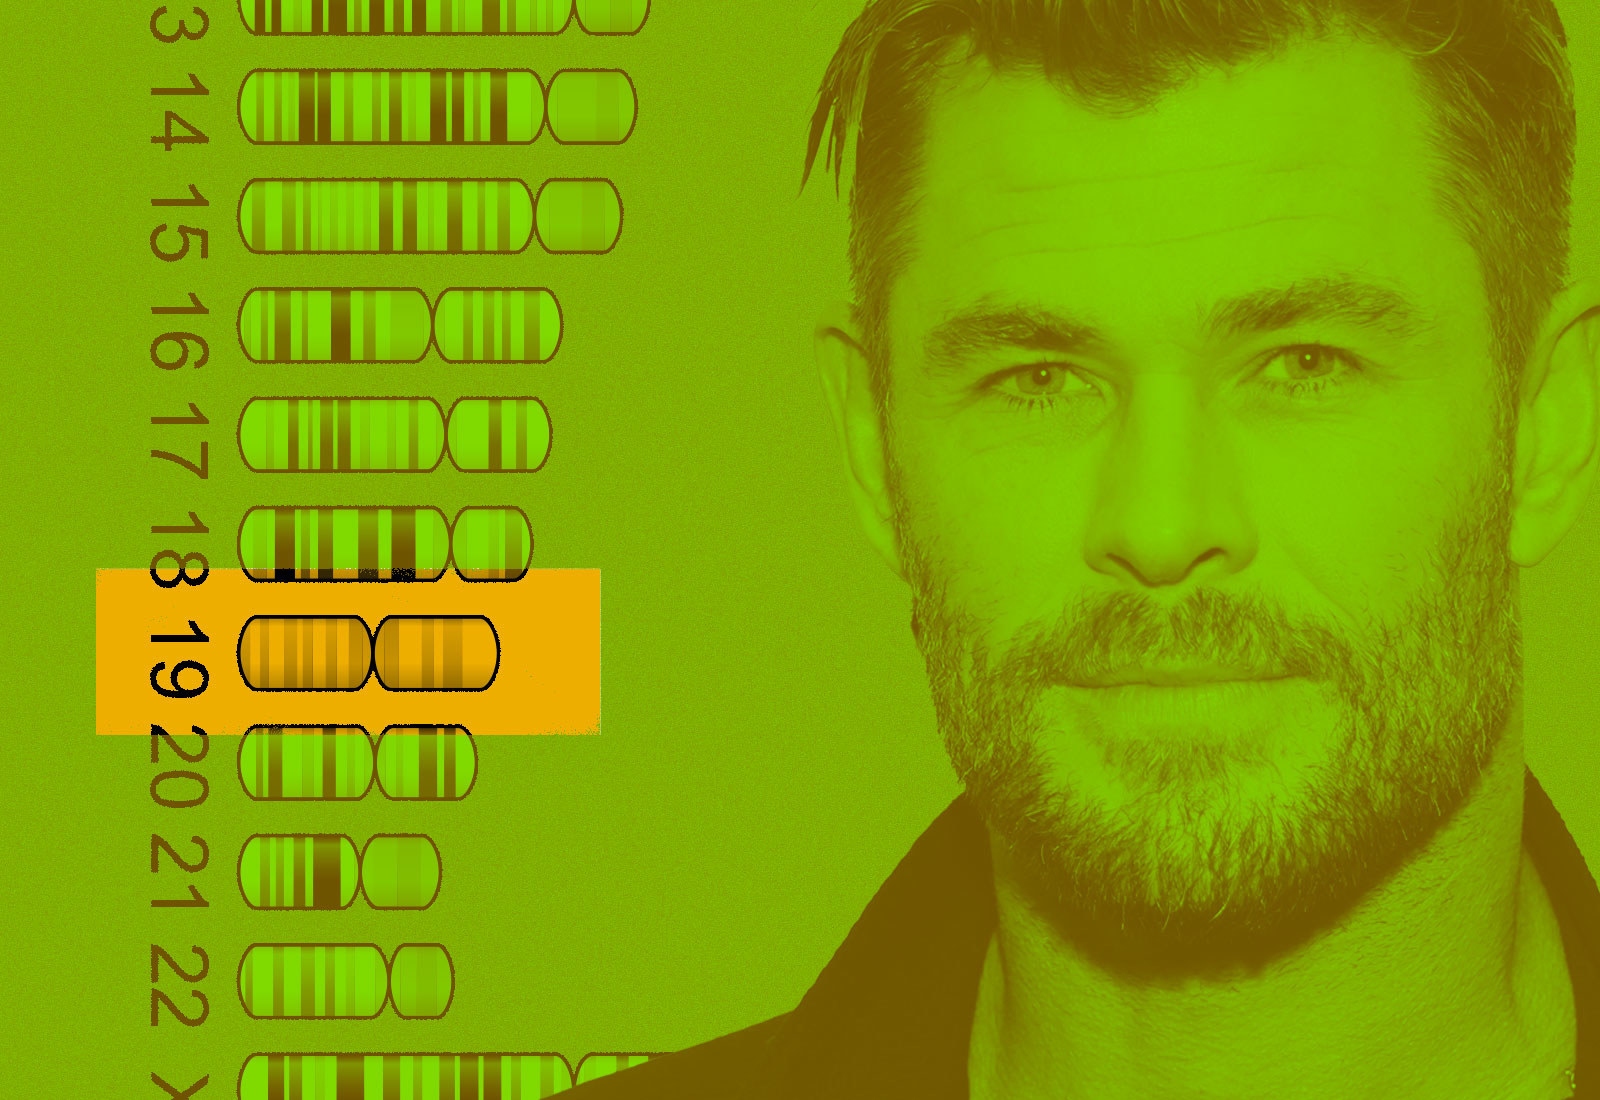 Chris Hemsworth has gene making Alzheimer's more likely, test reveals